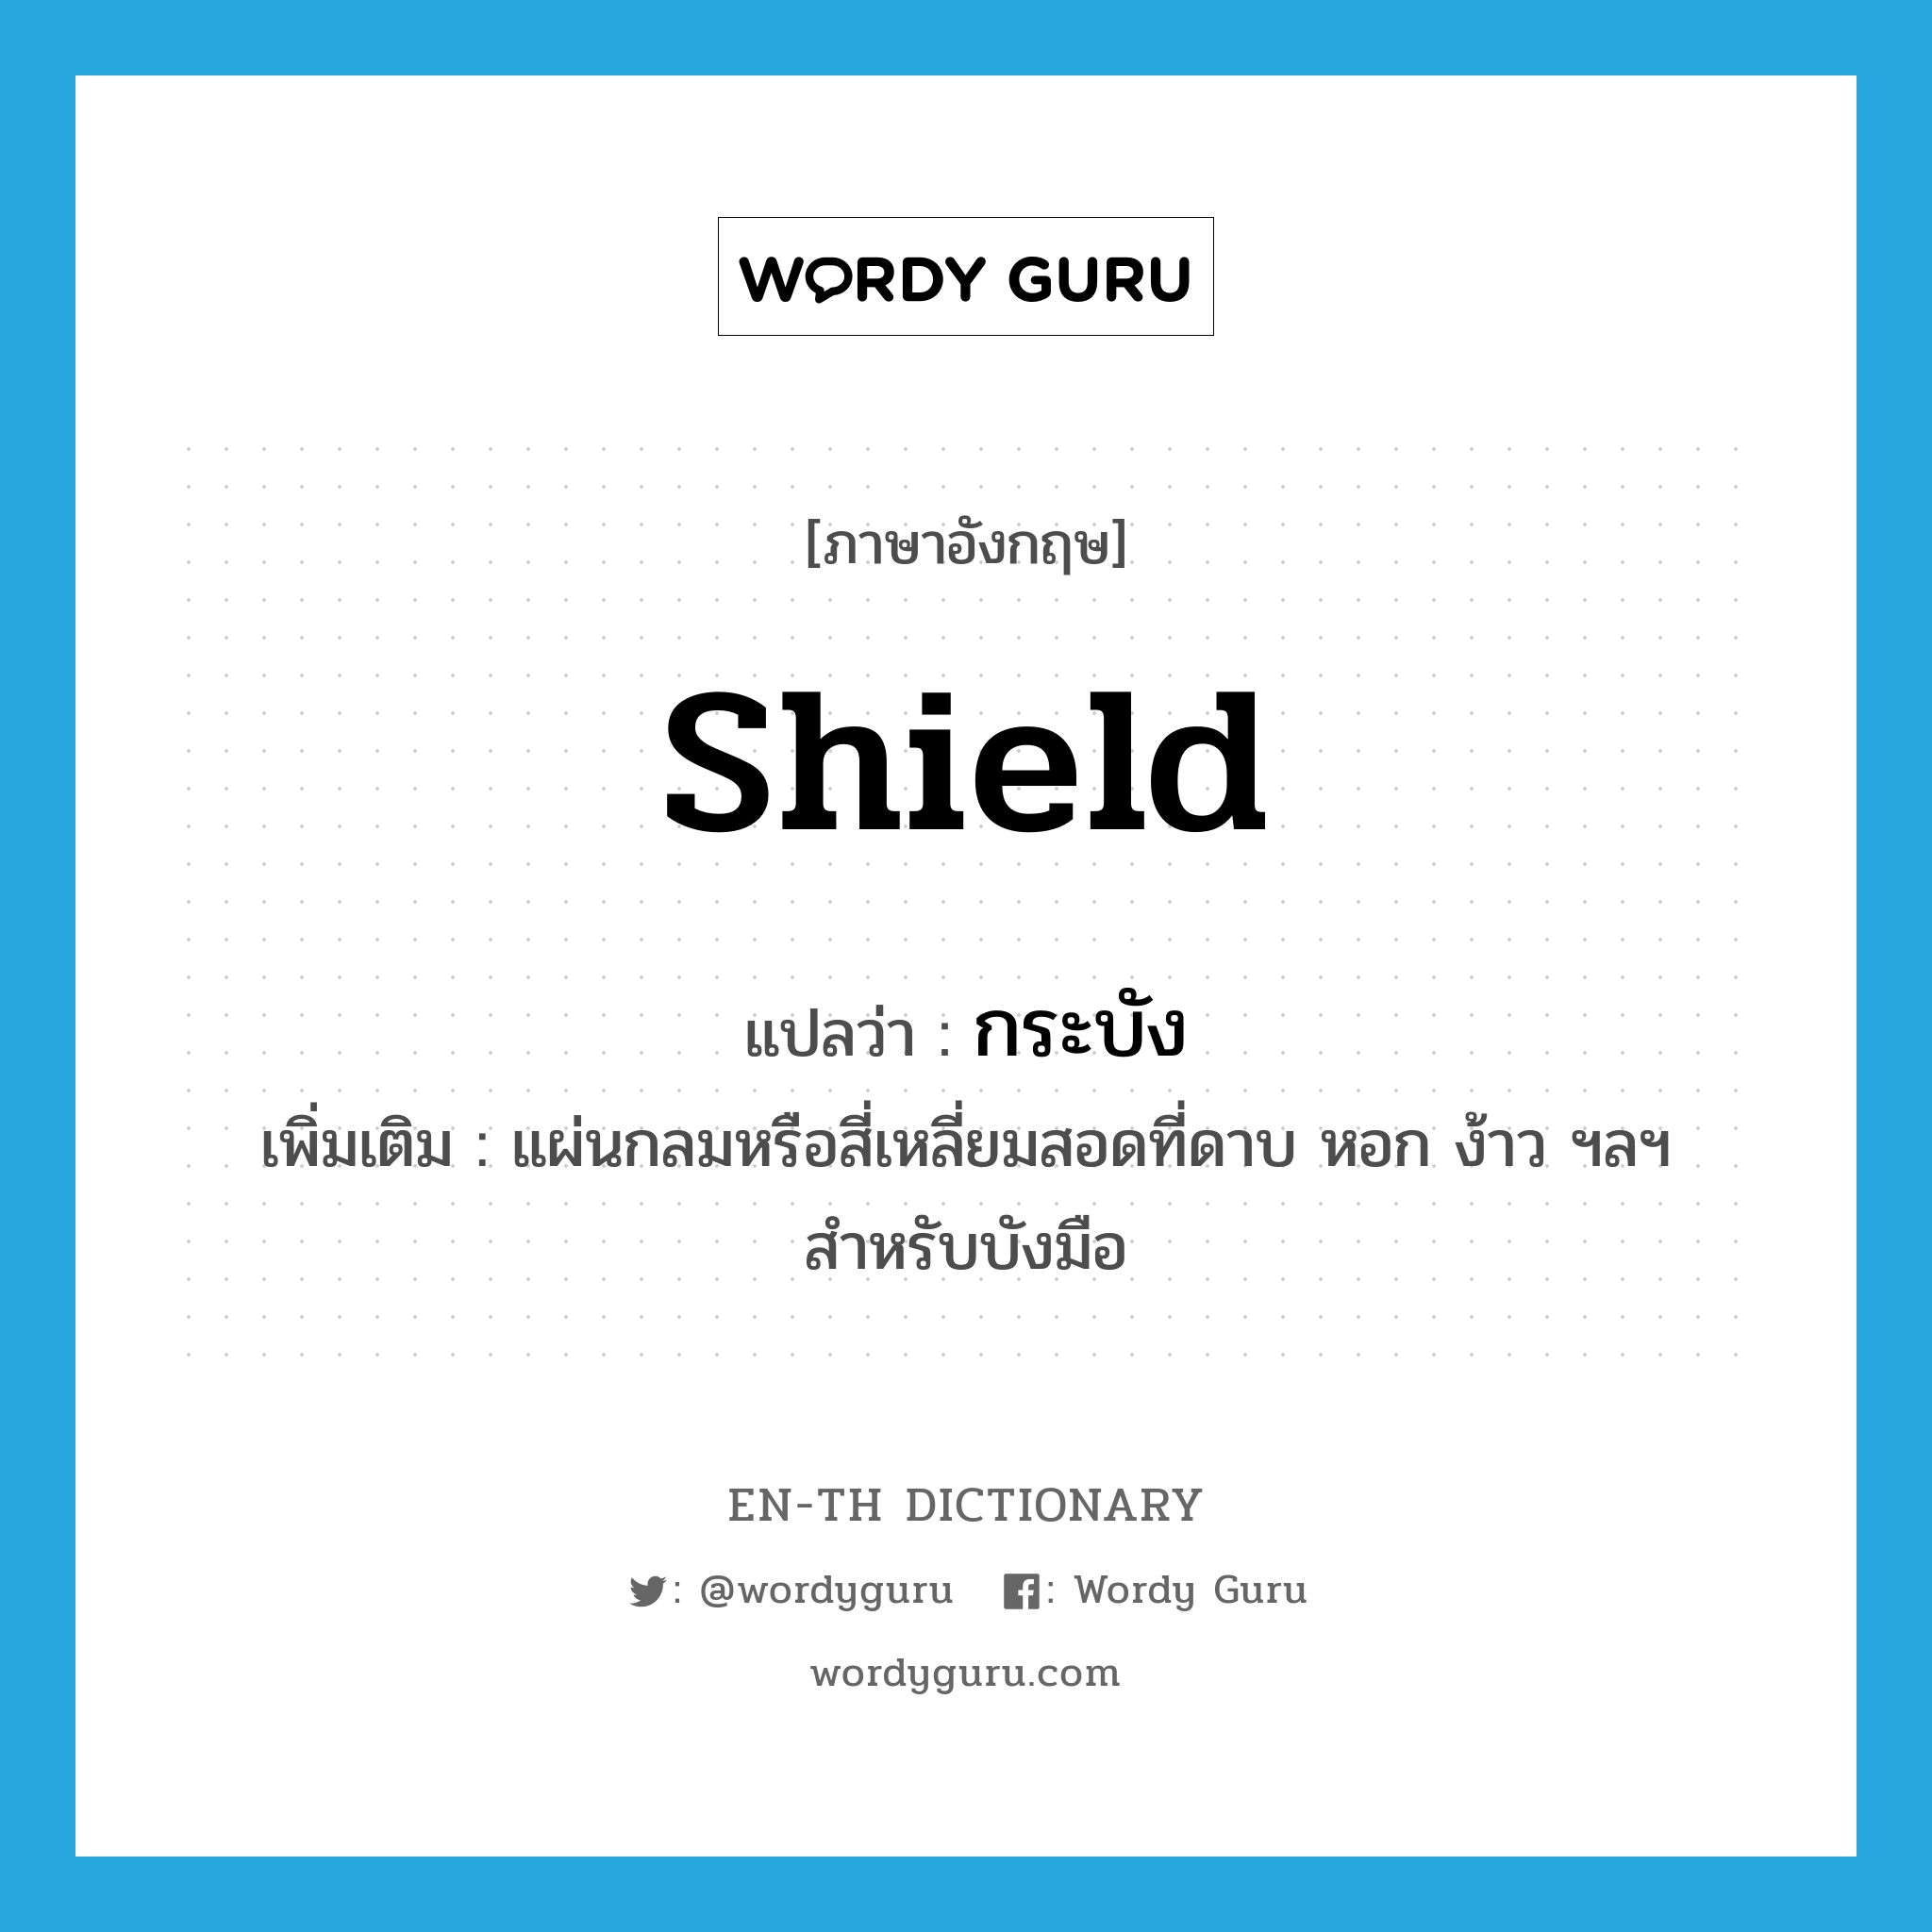 shield แปลว่า?, คำศัพท์ภาษาอังกฤษ shield แปลว่า กระบัง ประเภท N เพิ่มเติม แผ่นกลมหรือสี่เหลี่ยมสอดที่ดาบ หอก ง้าว ฯลฯ สำหรับบังมือ หมวด N